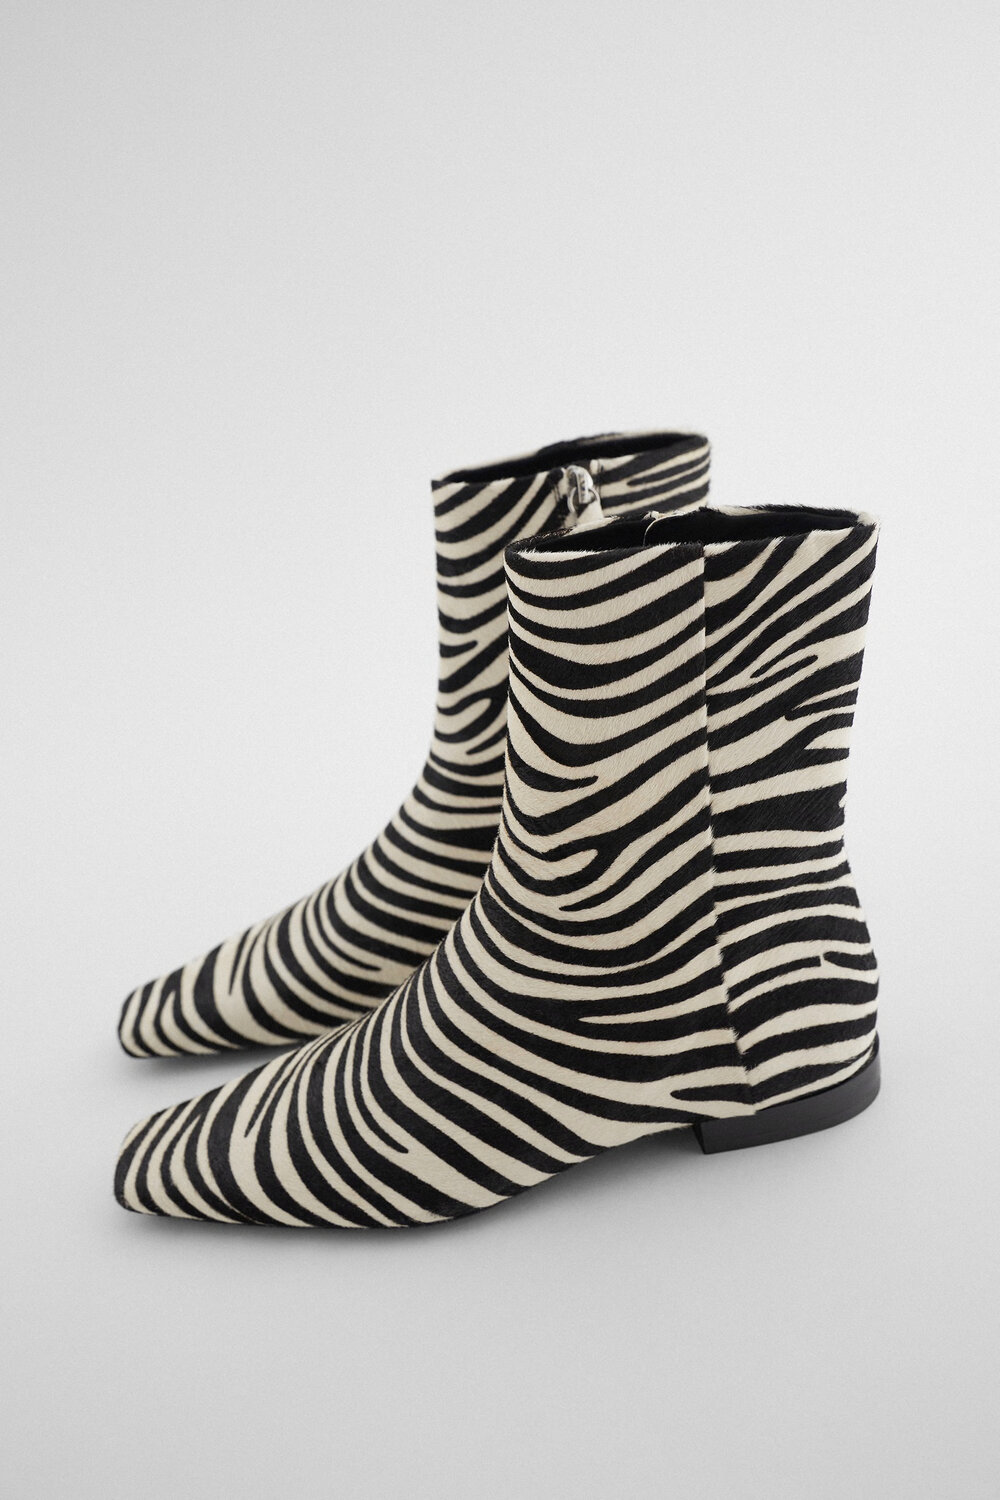 Zara-Zebra-Boots.jpg